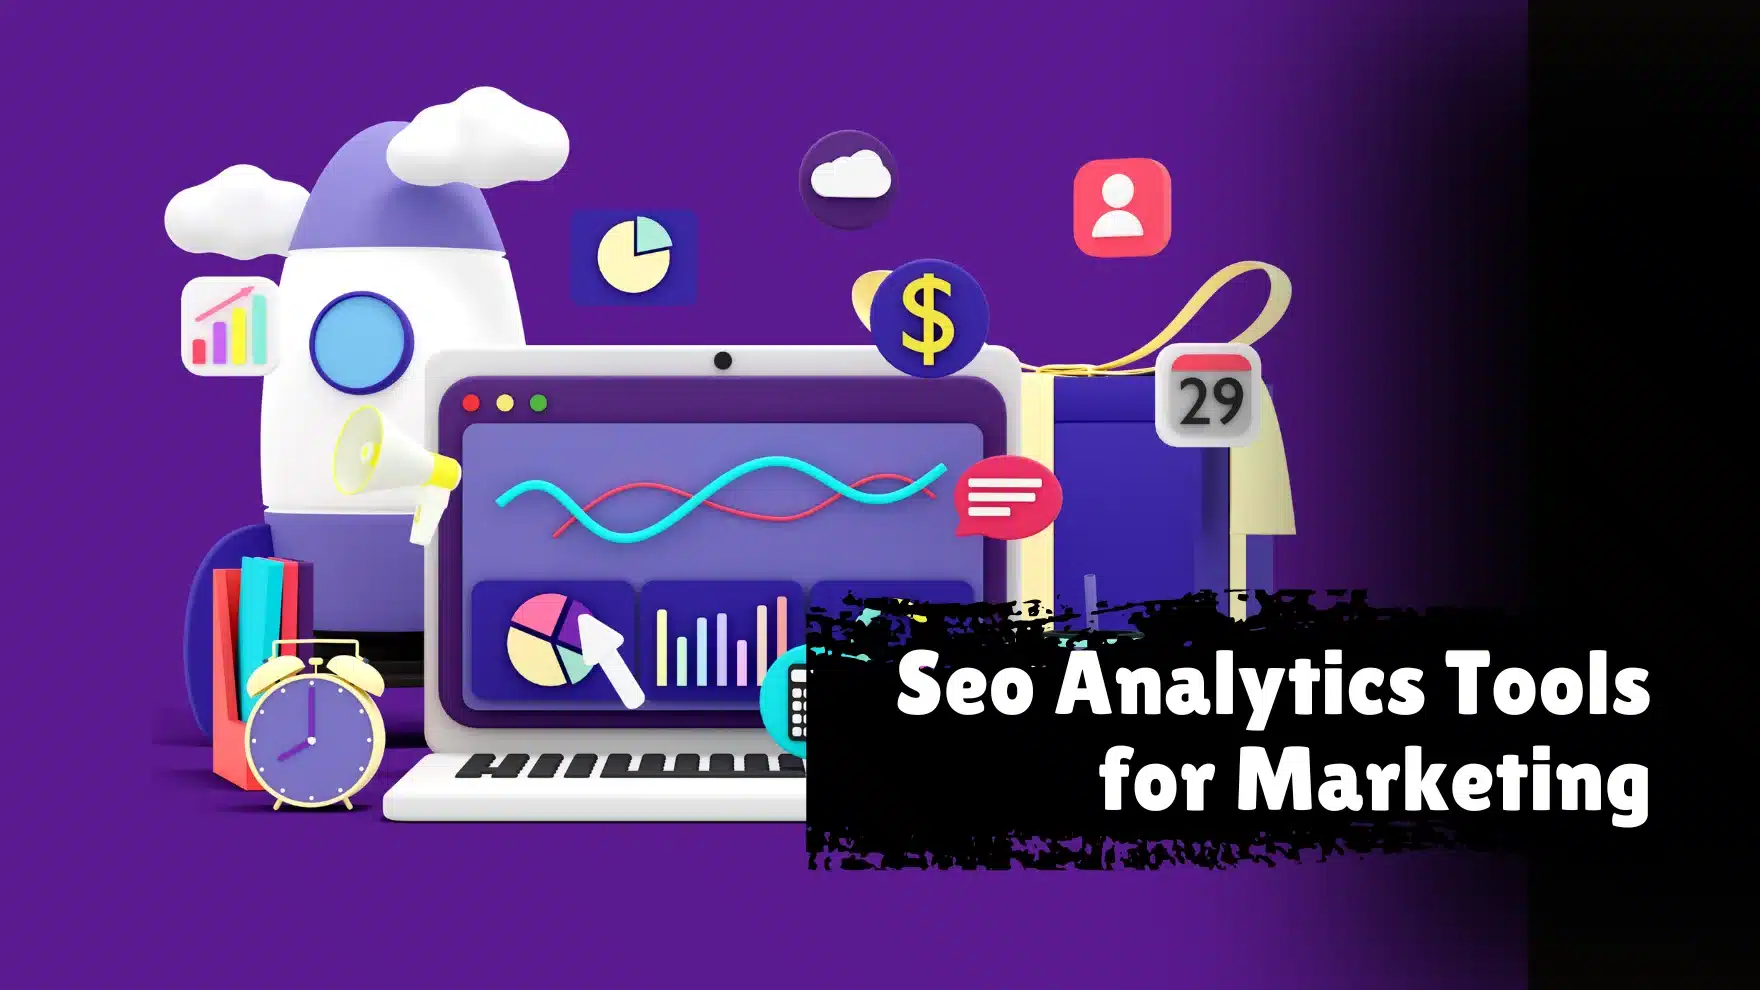 Seo Analytics Tools for Marketing